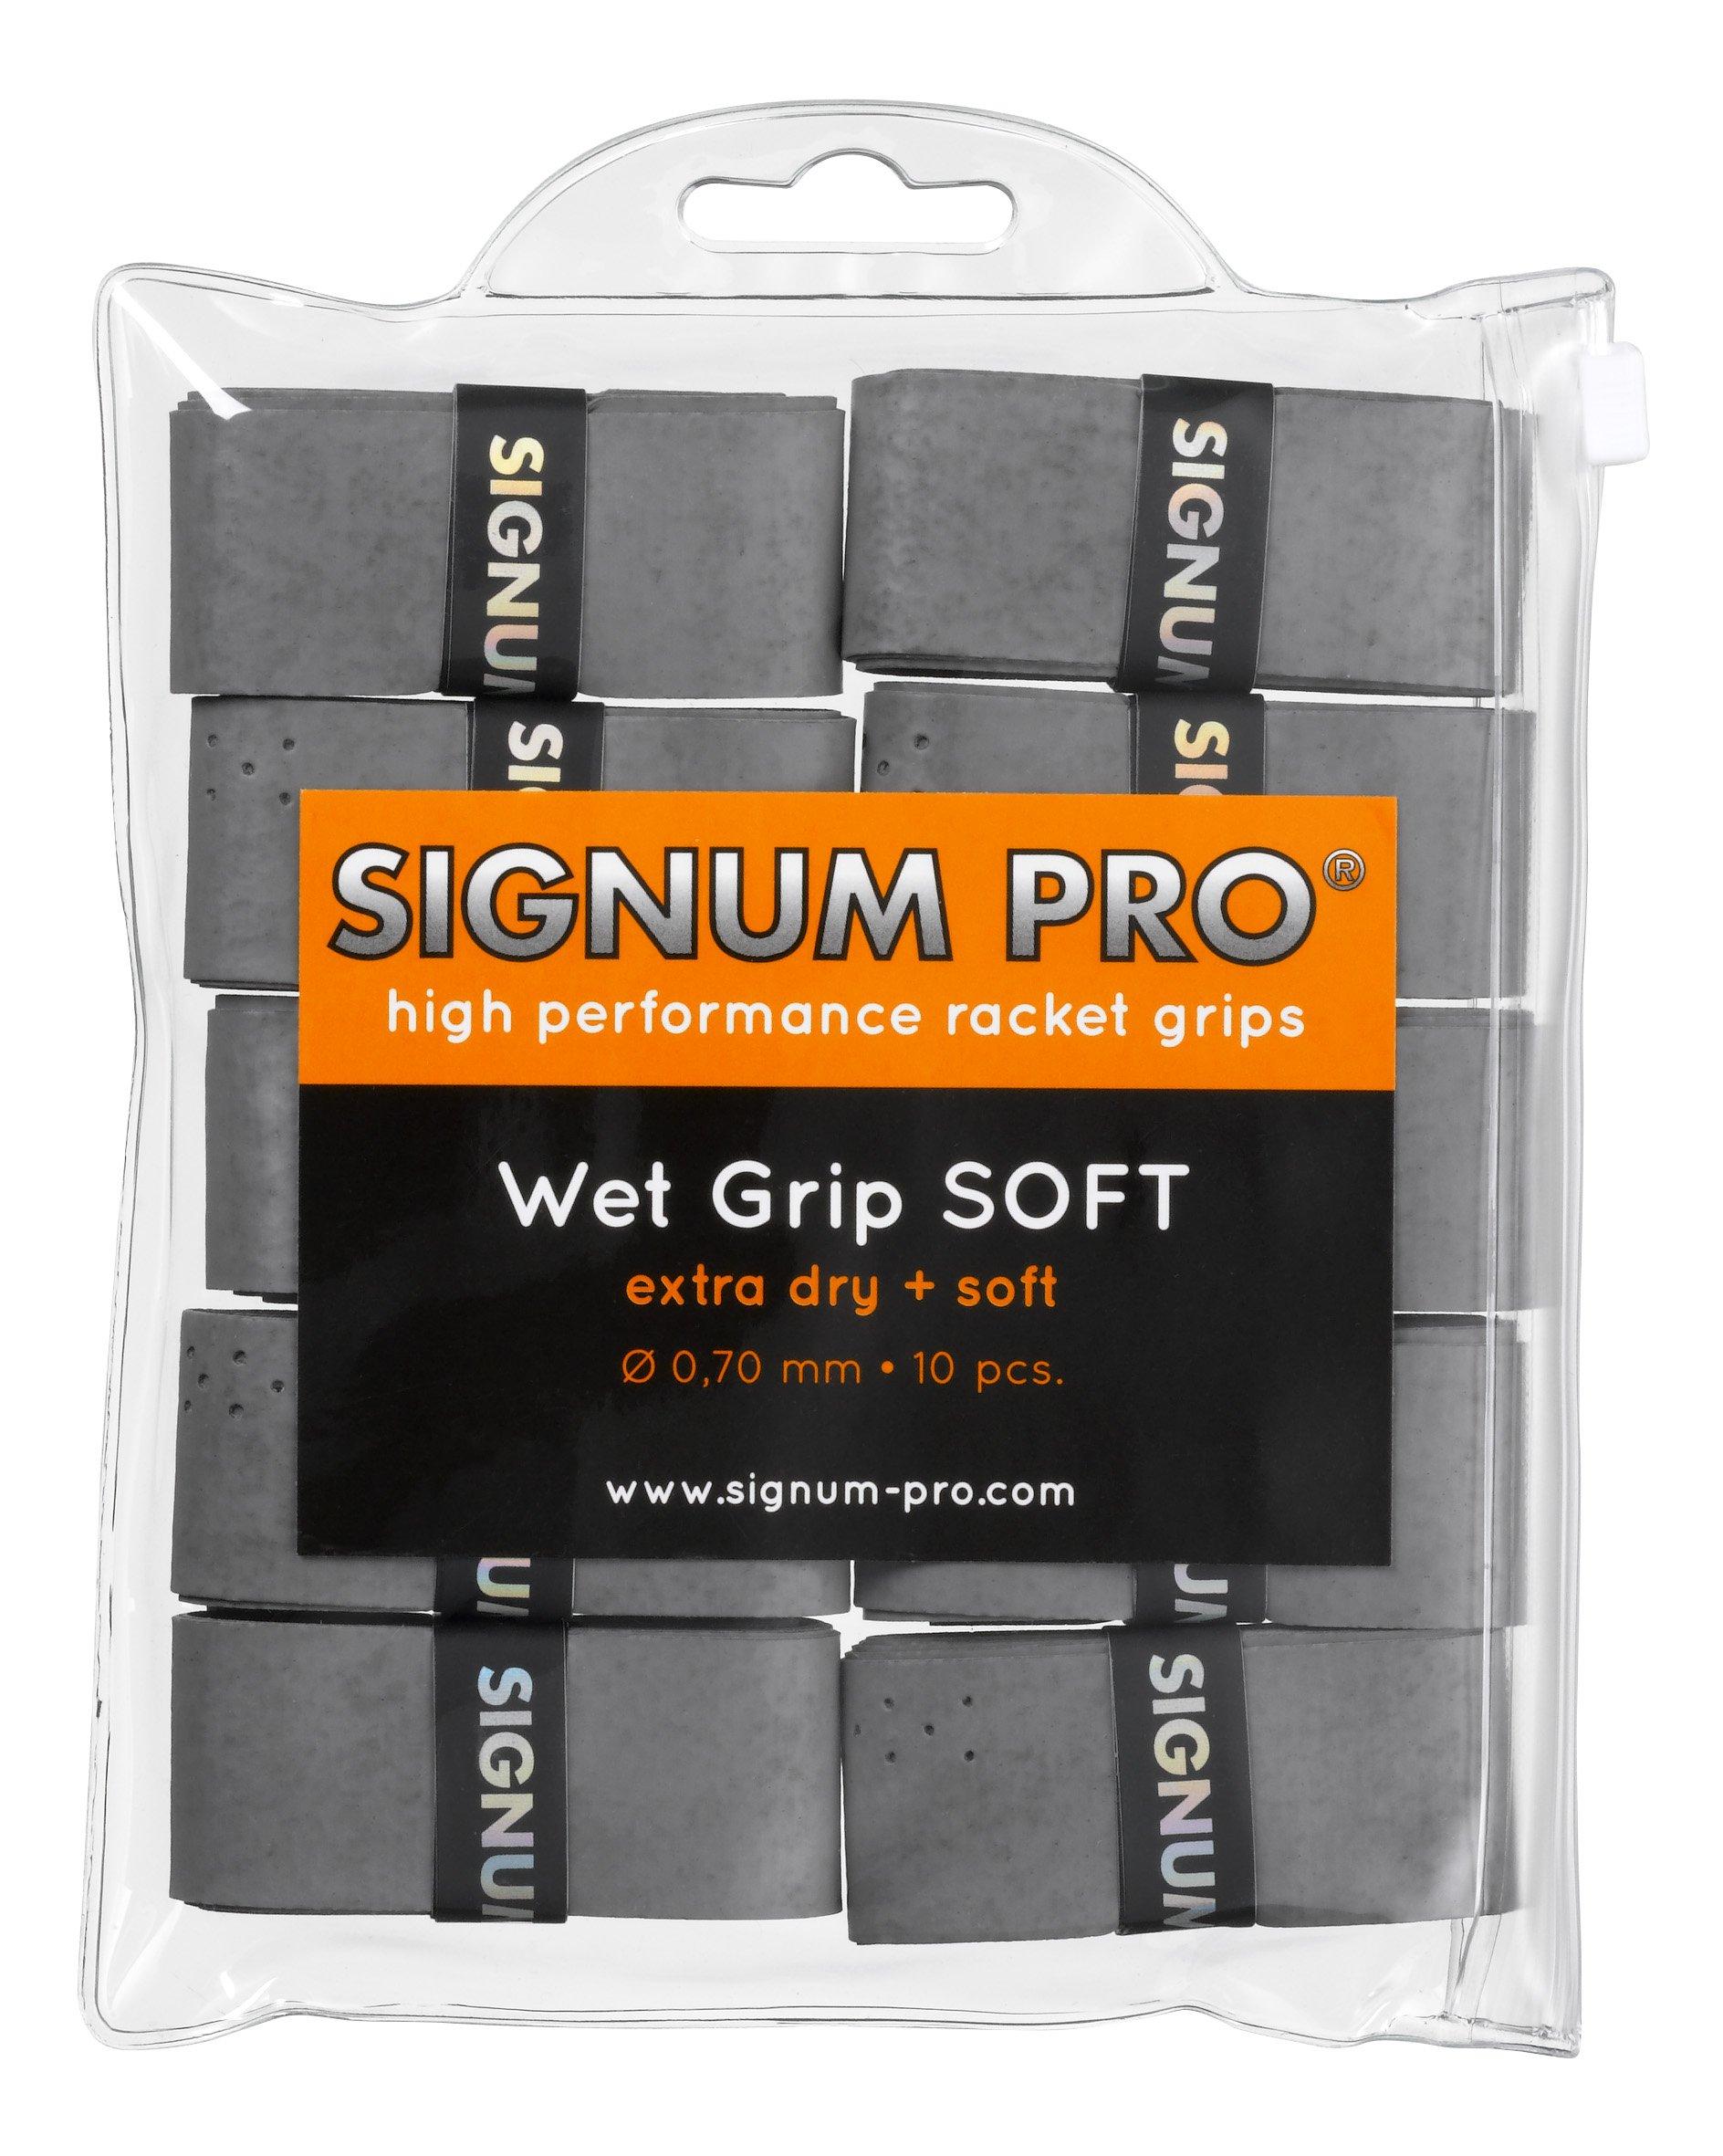 Signum Pro  Wet Grip SOFT paquet de 10 